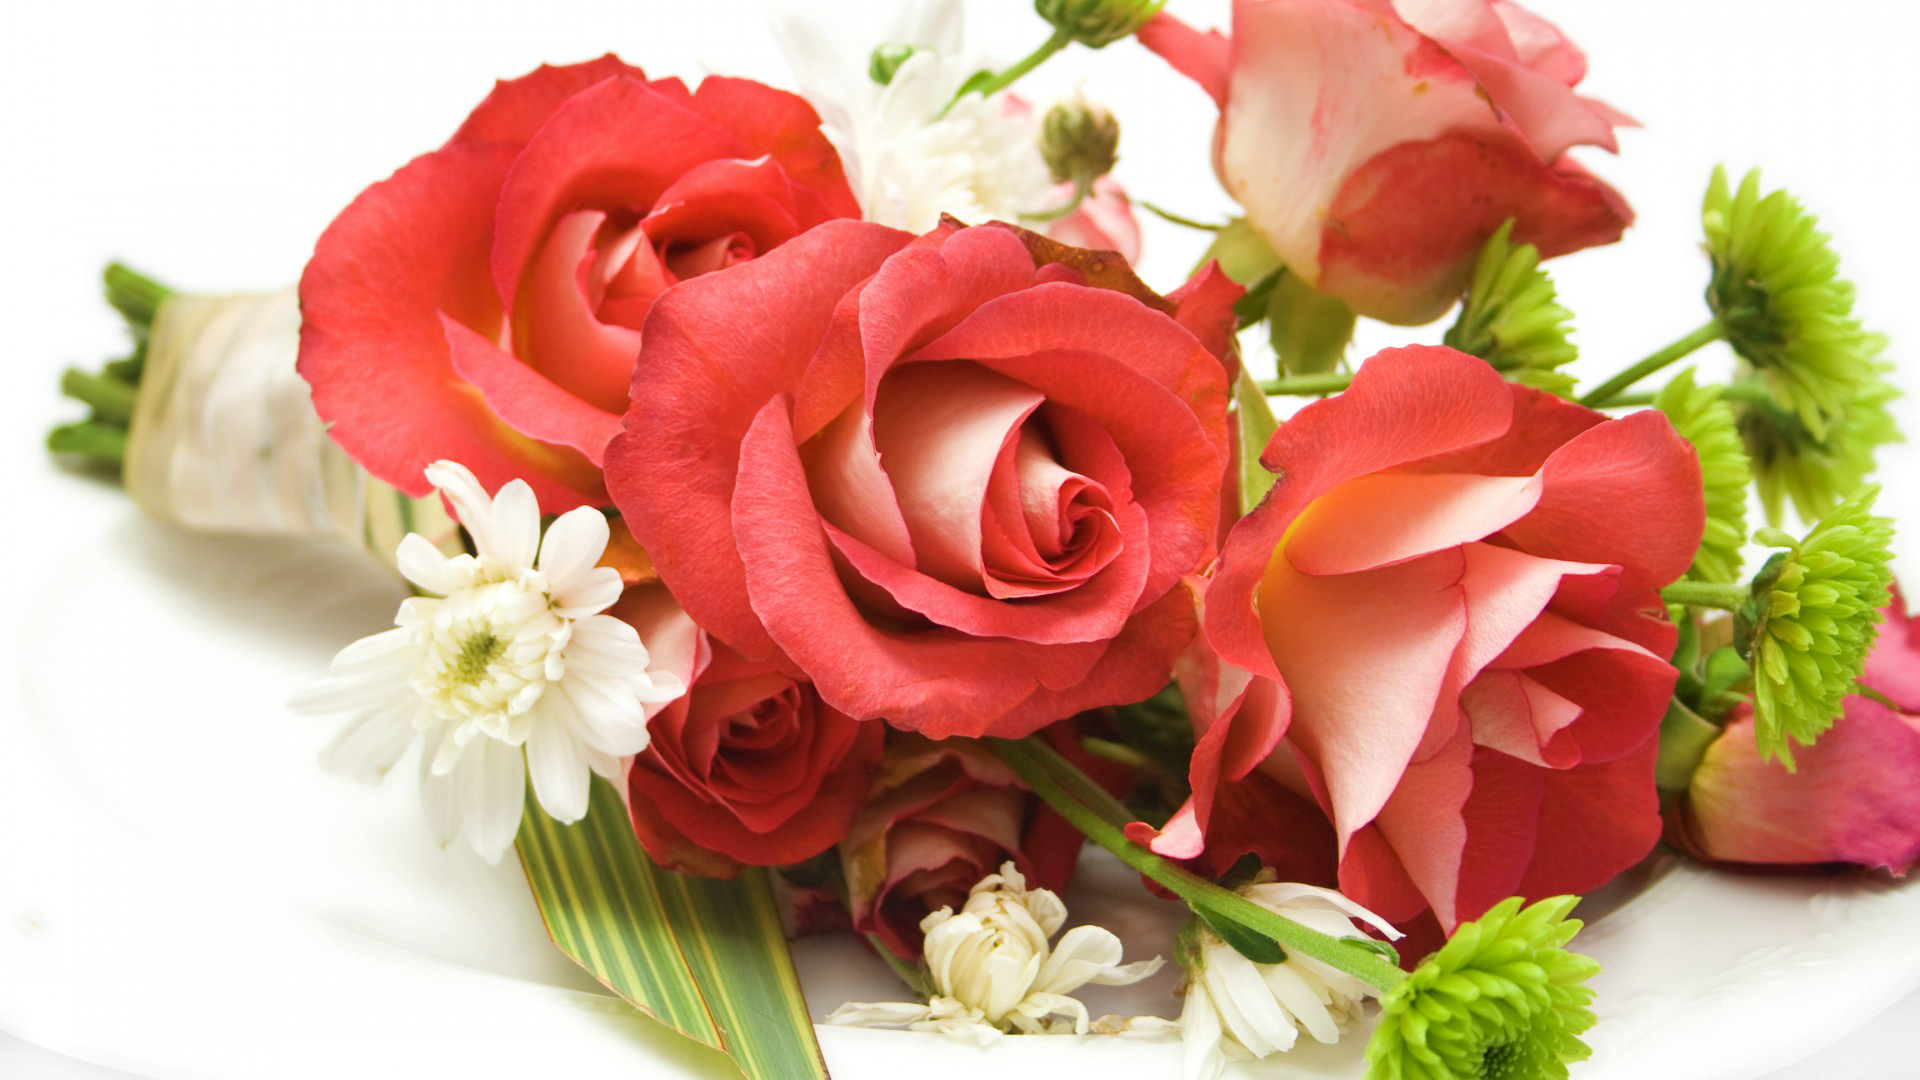 Roses - Flowers Wallpaper (33460137) - Fanpop